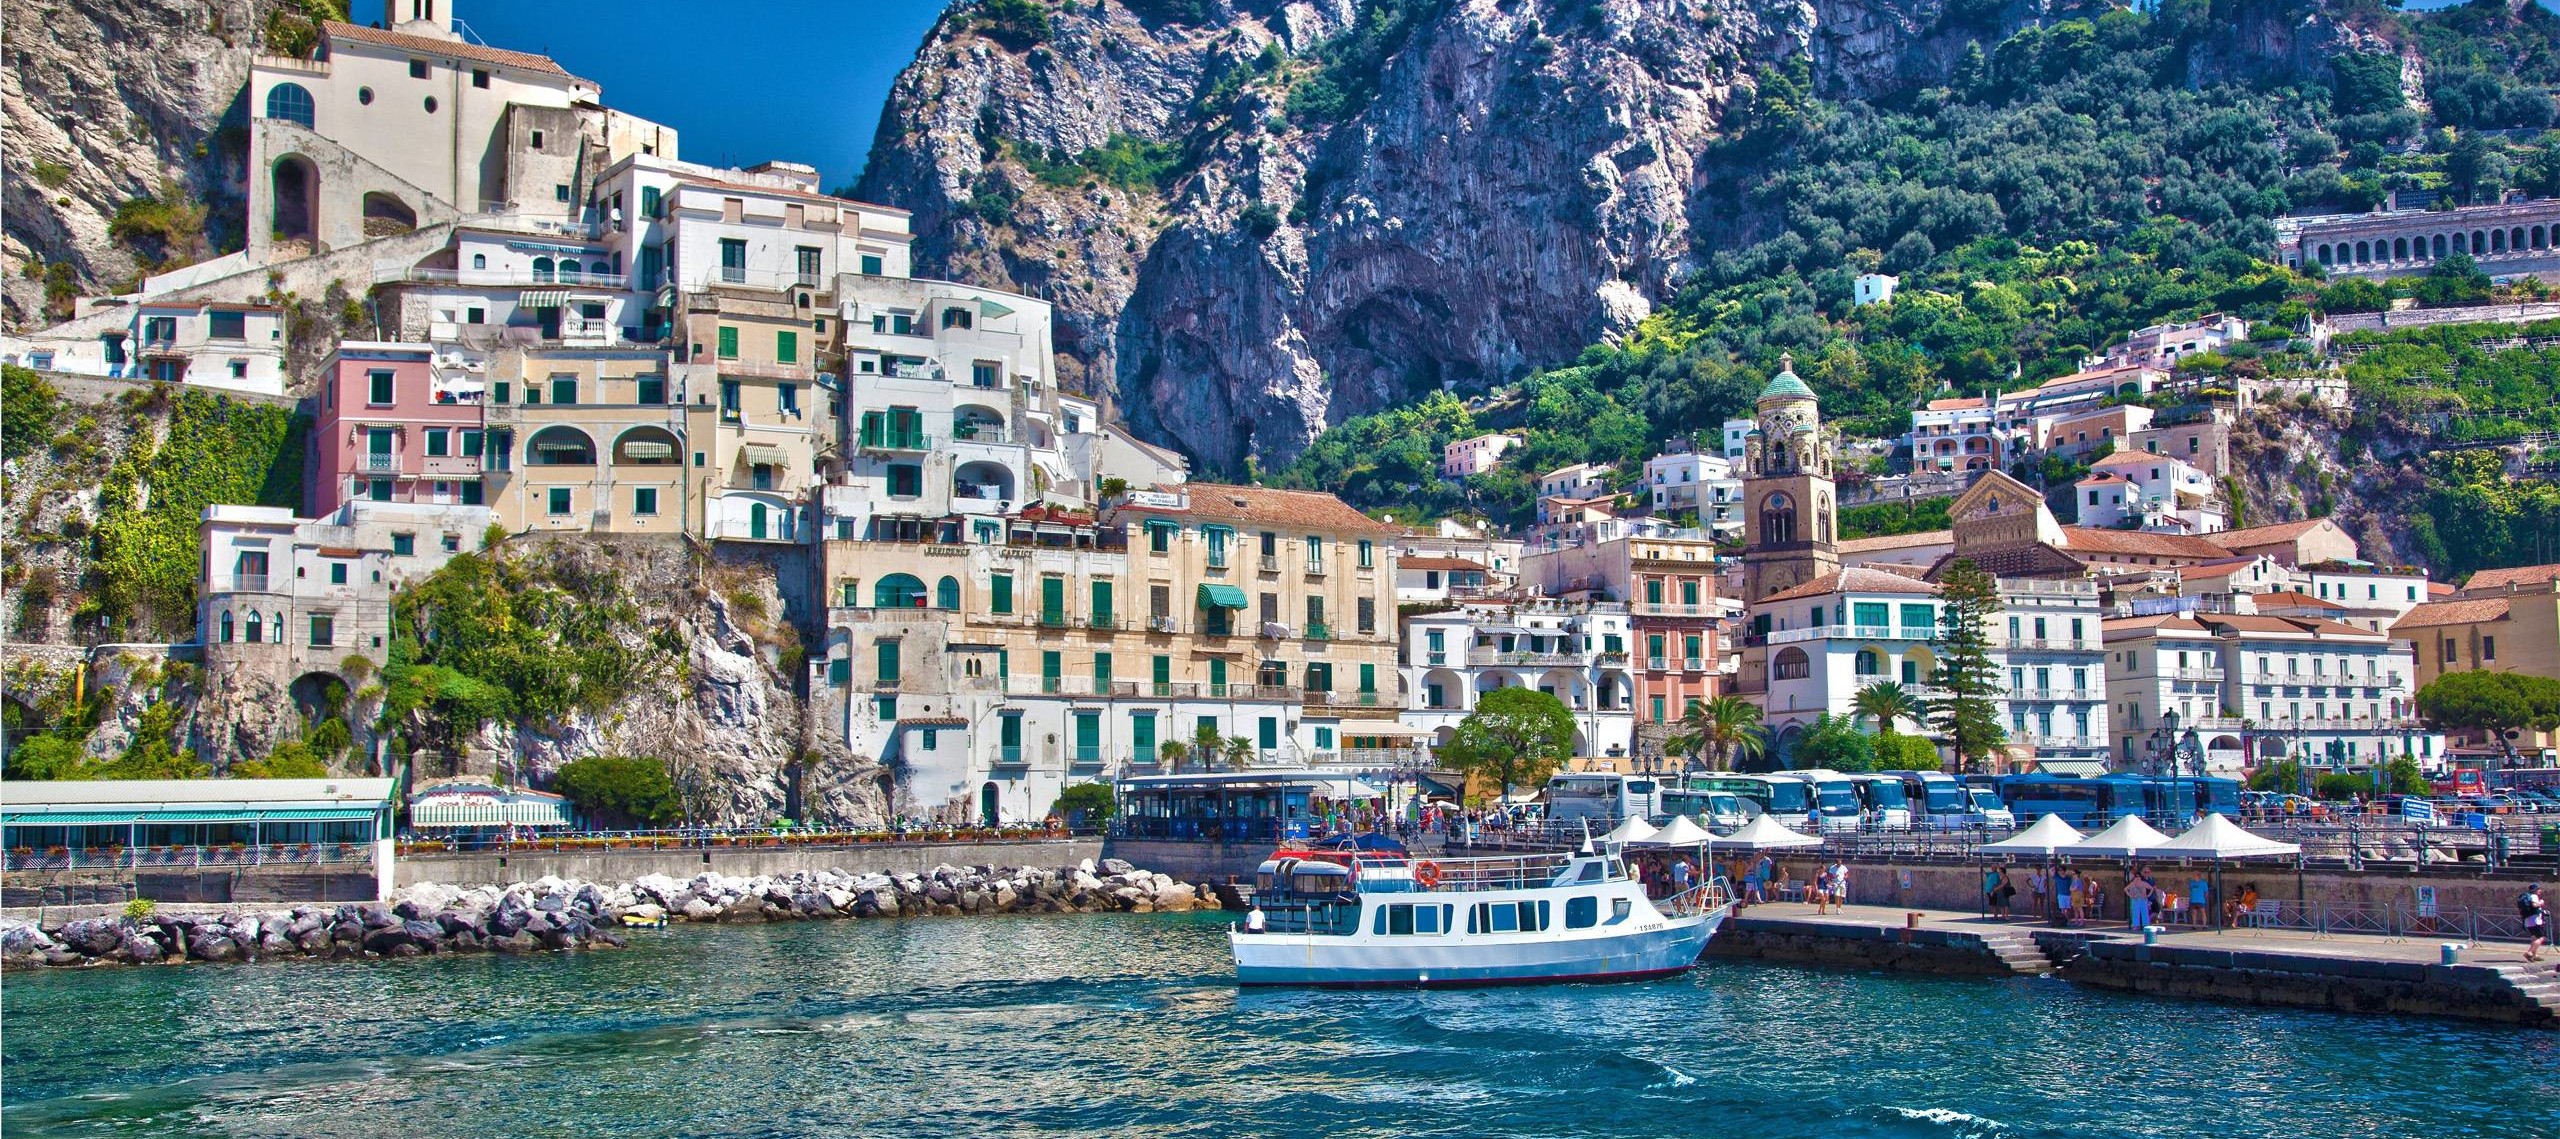 Campania, Sorrento si conferma tra le dieci migliori destinazioni al mondo